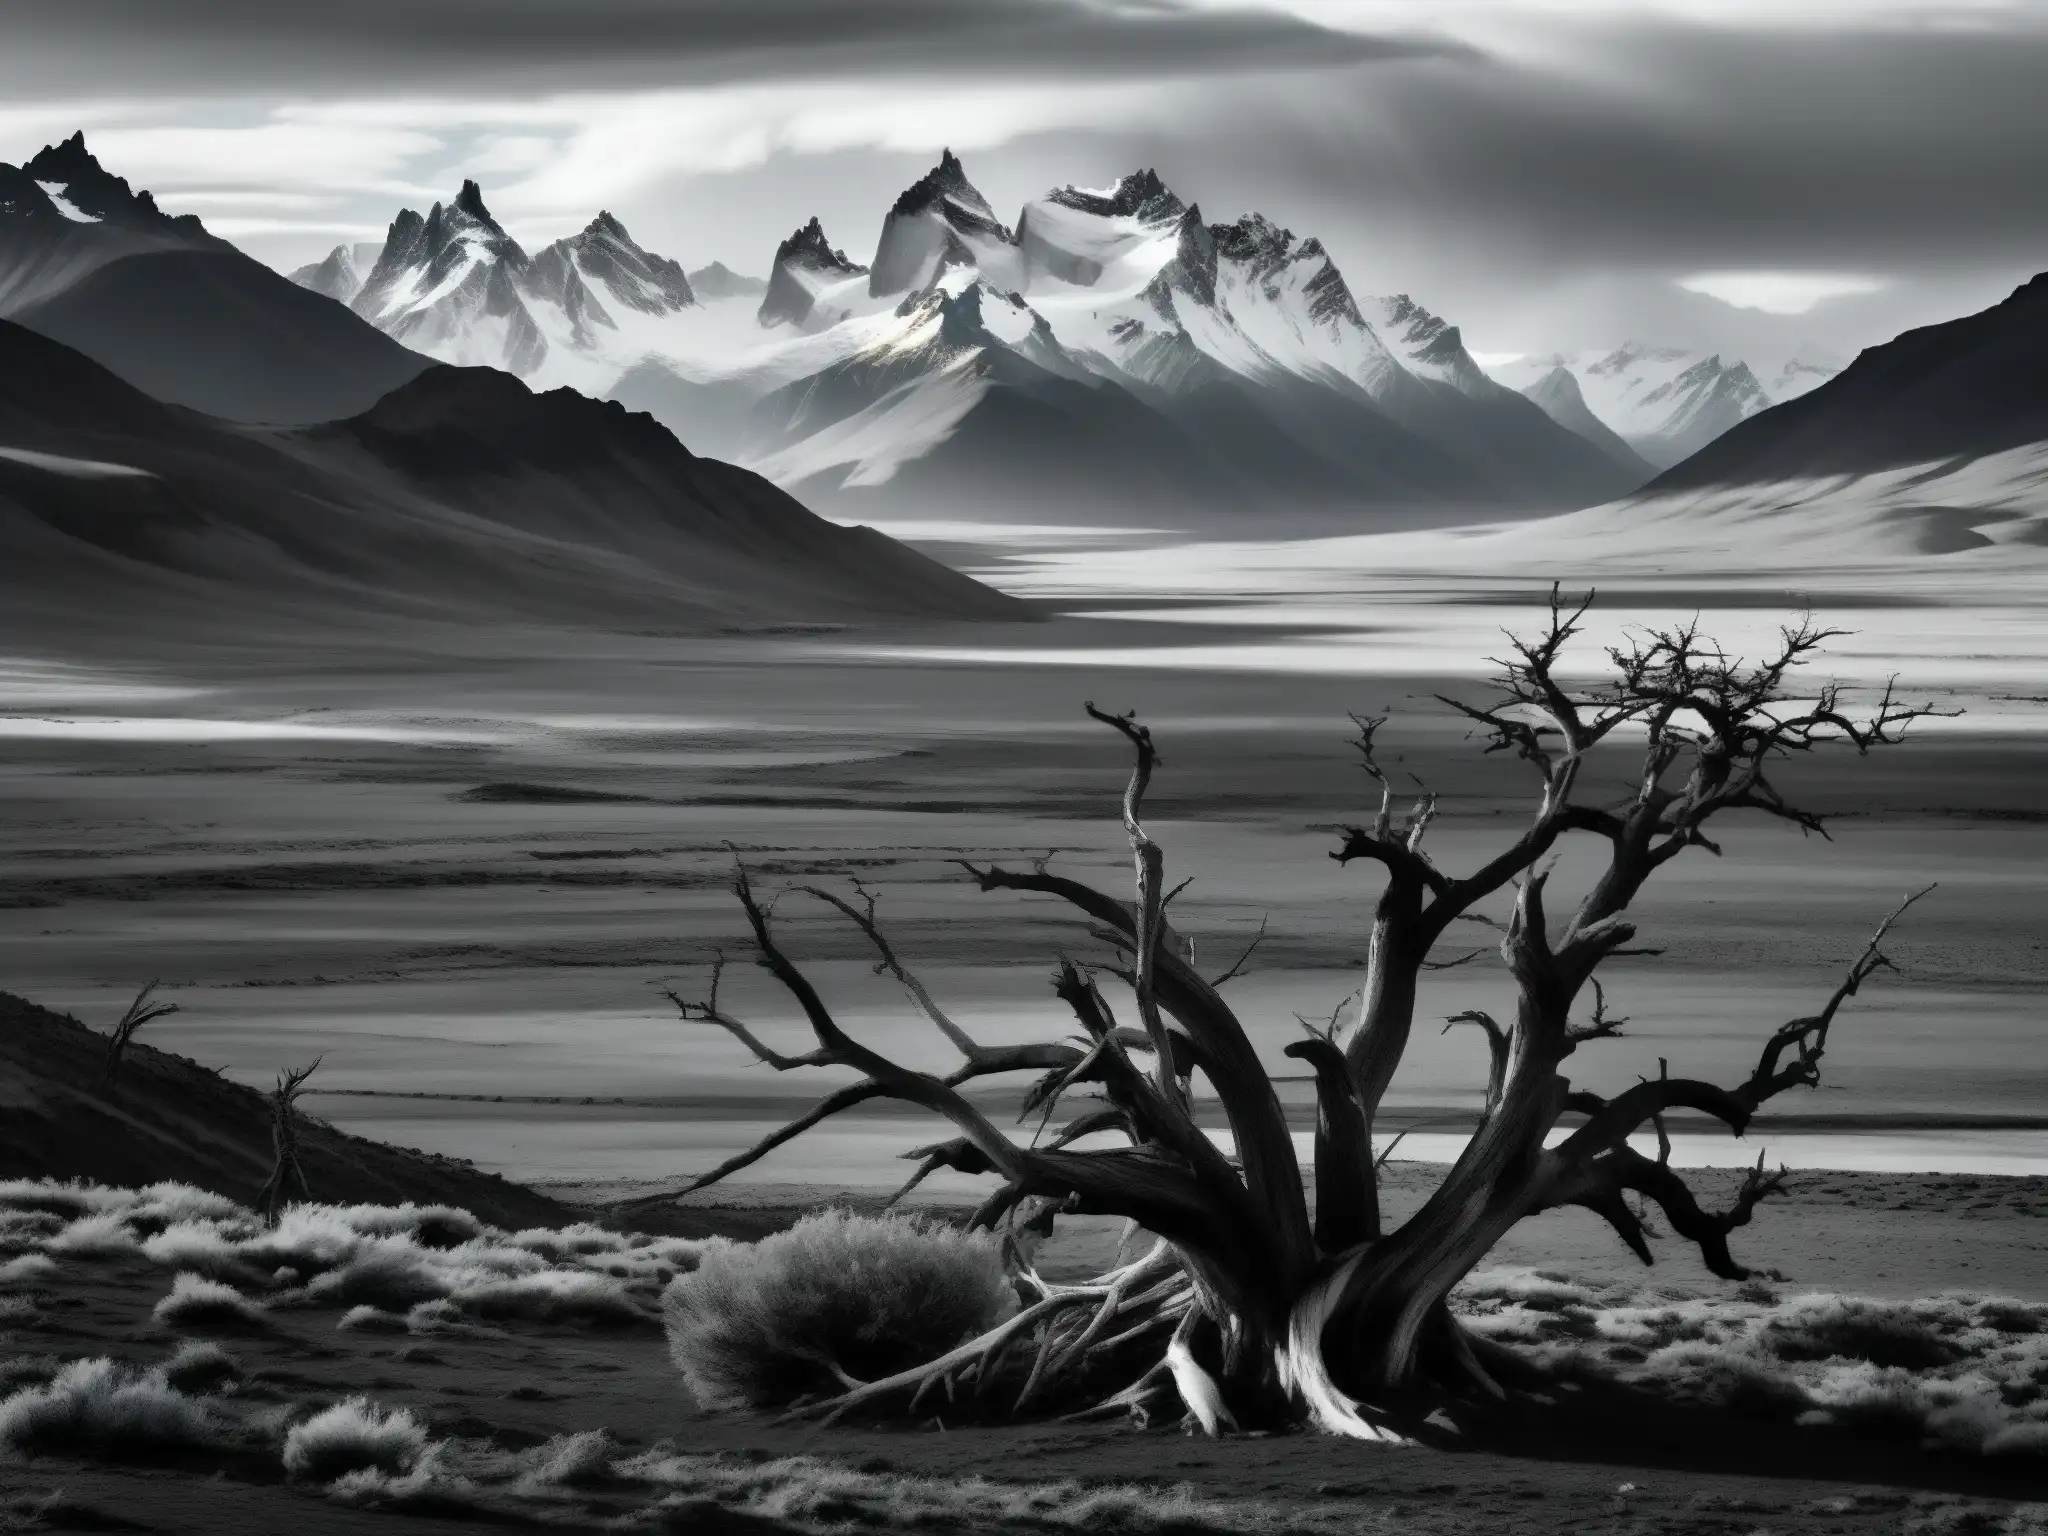 Imagen en blanco y negro de la desolada y ventosa región patagónica con árboles retorcidos por el Mito Viento Blanco